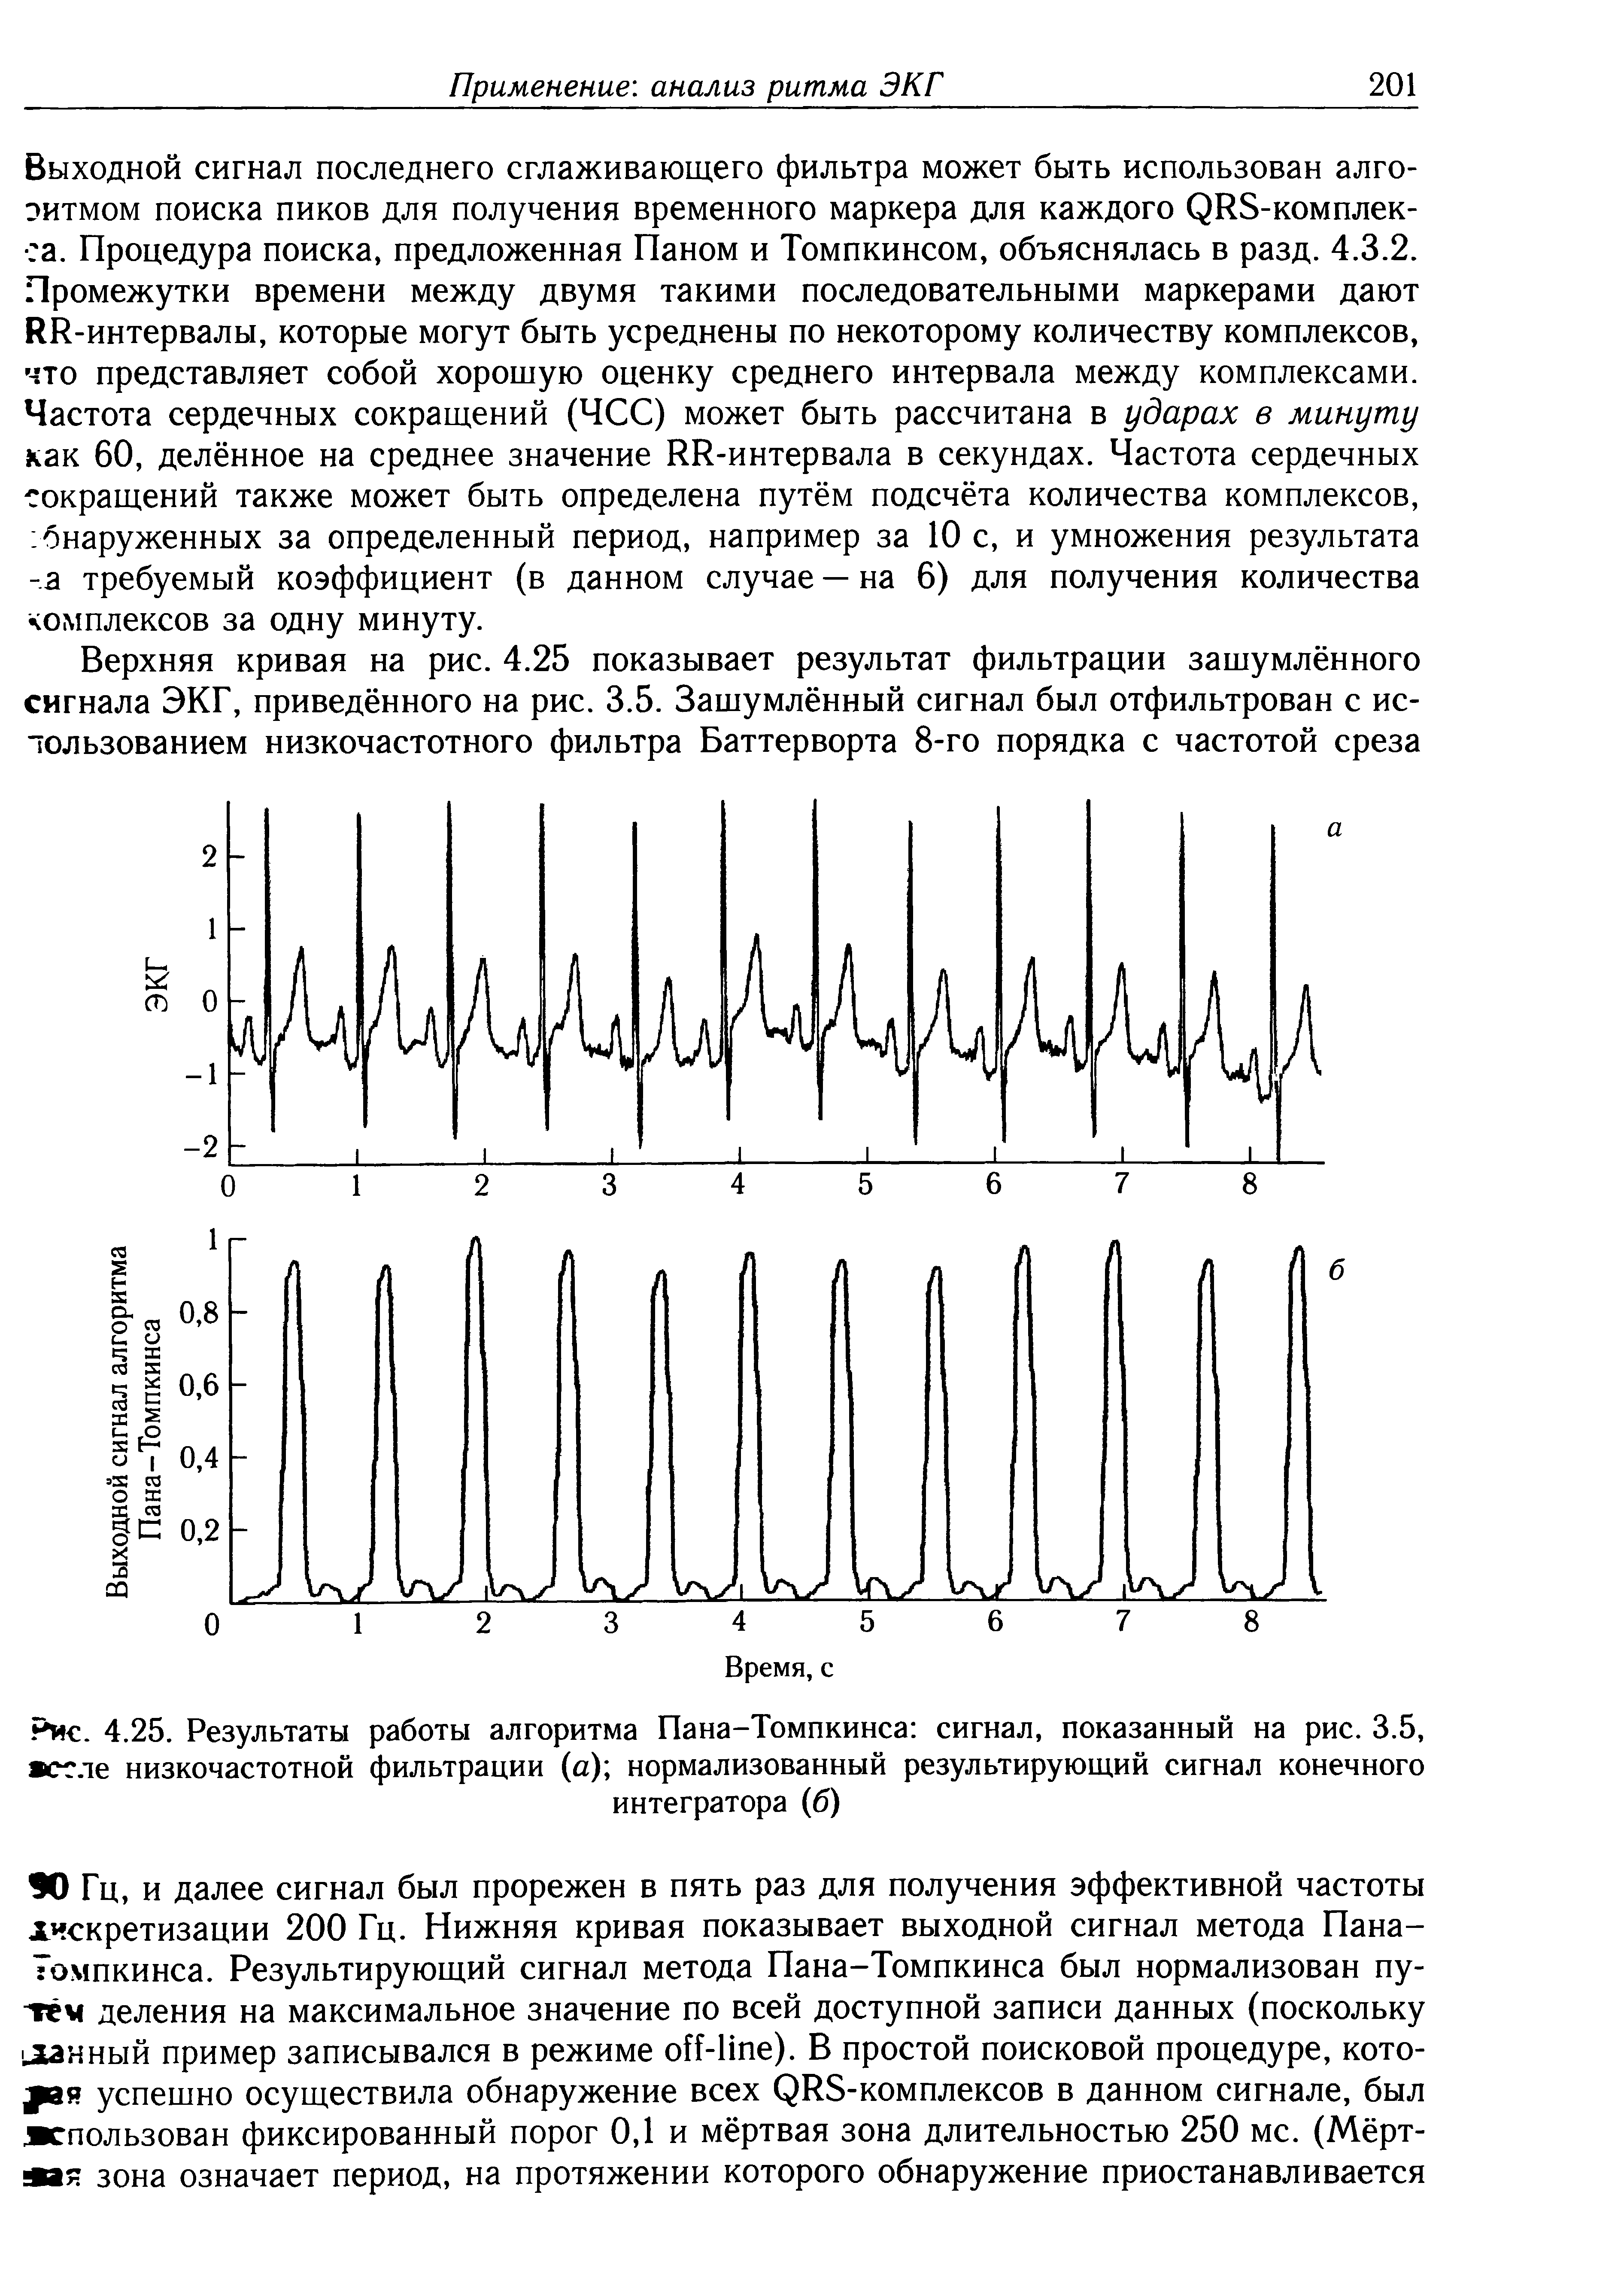 Рис. 4.25. Результаты работы алгоритма Пана-Томпкинса сигнал, показанный на рис. 3.5, осле низкочастотной фильтрации (а) нормализованный результирующий сигнал конечного интегратора (б)...